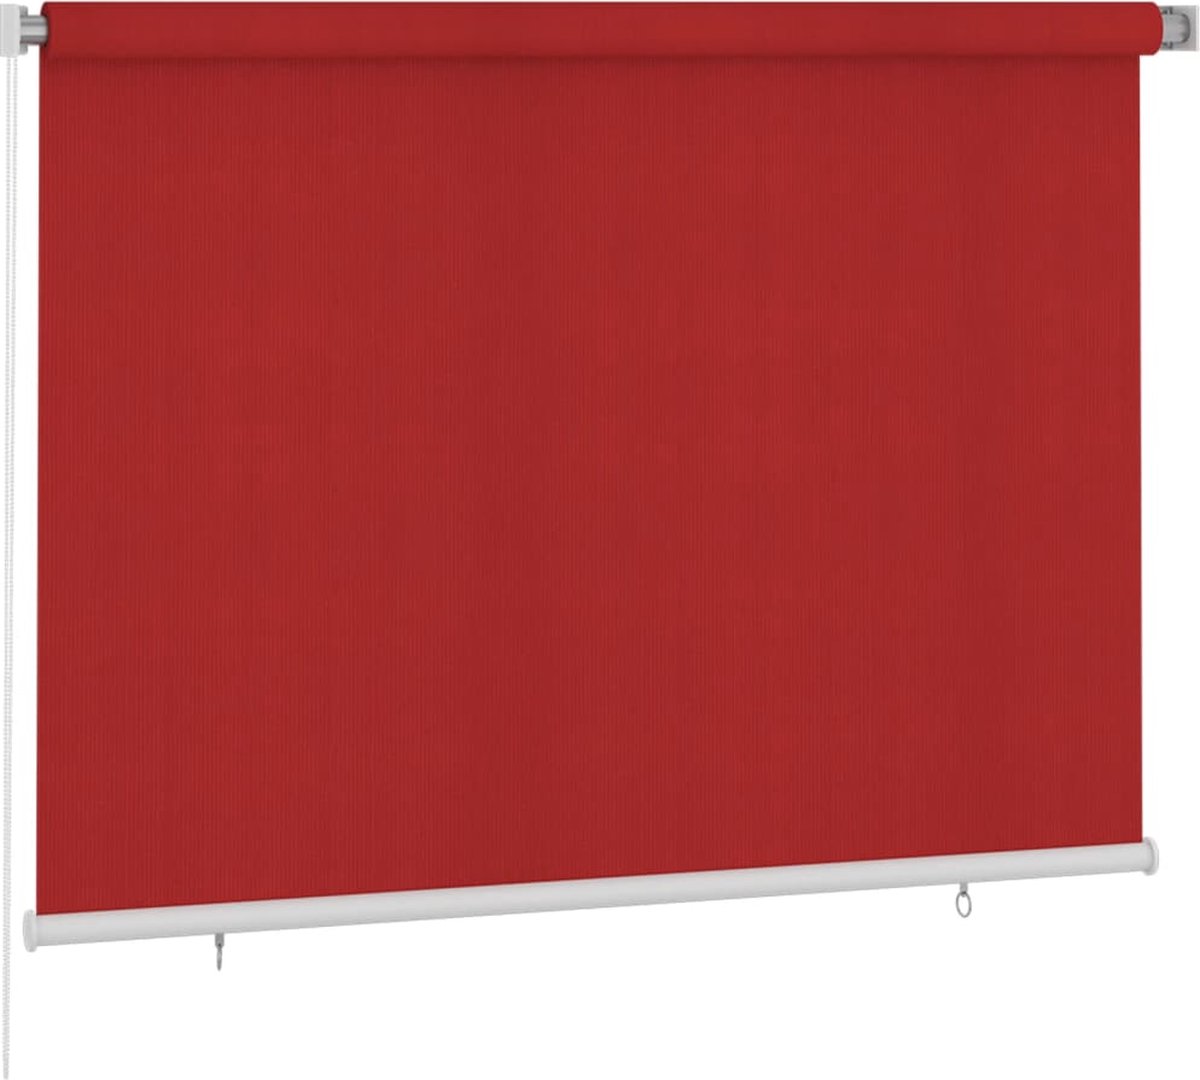 VidaLife Rolgordijn voor buiten 200x140 cm rood